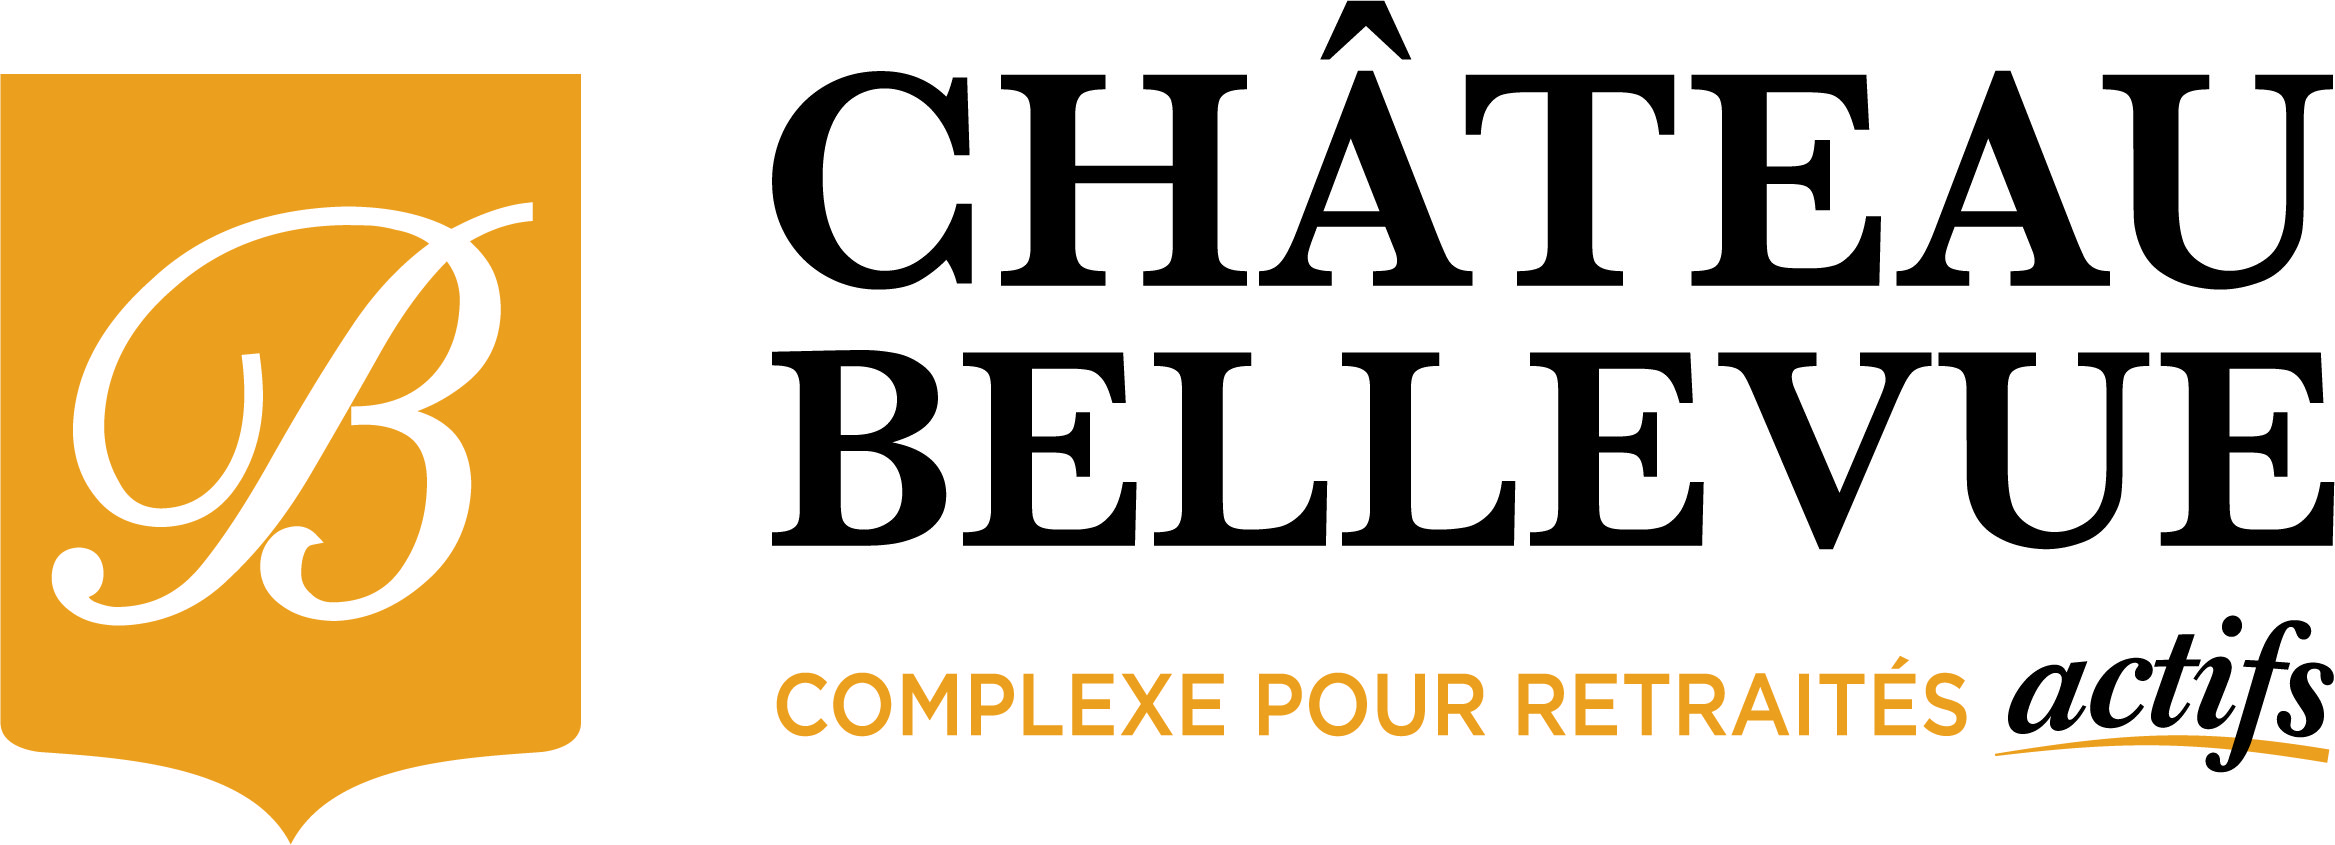 Groupe Château Bellevue, complexes pour retraités actifs